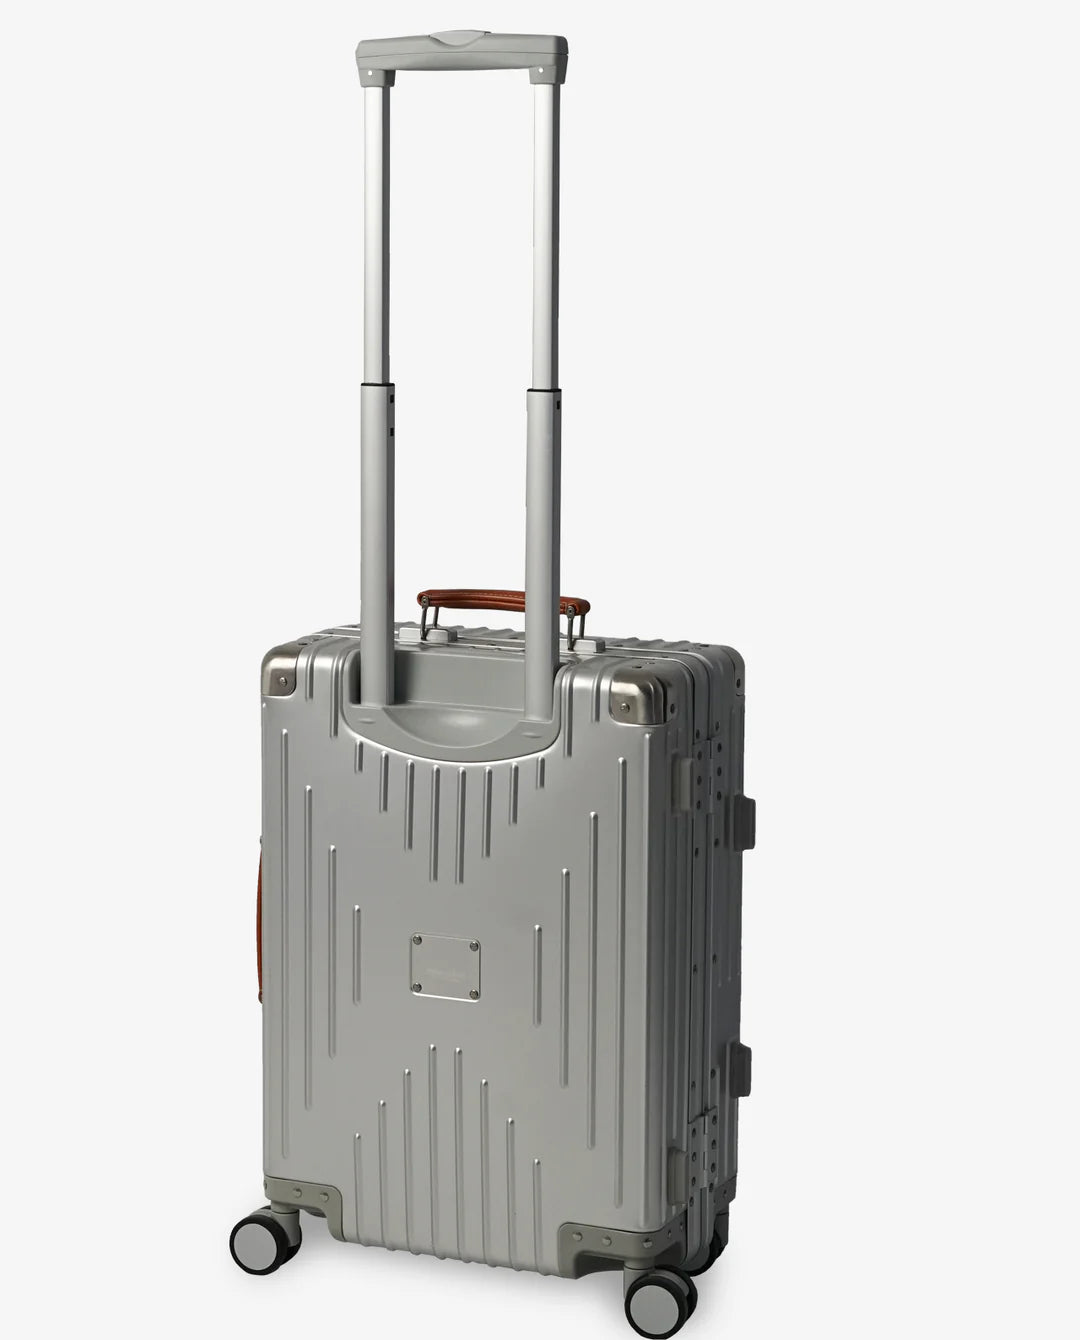 他のsizeを使用した為イノベーター スーツケース アルミ 36L 新品未使用品 機内持込み可 送料込み